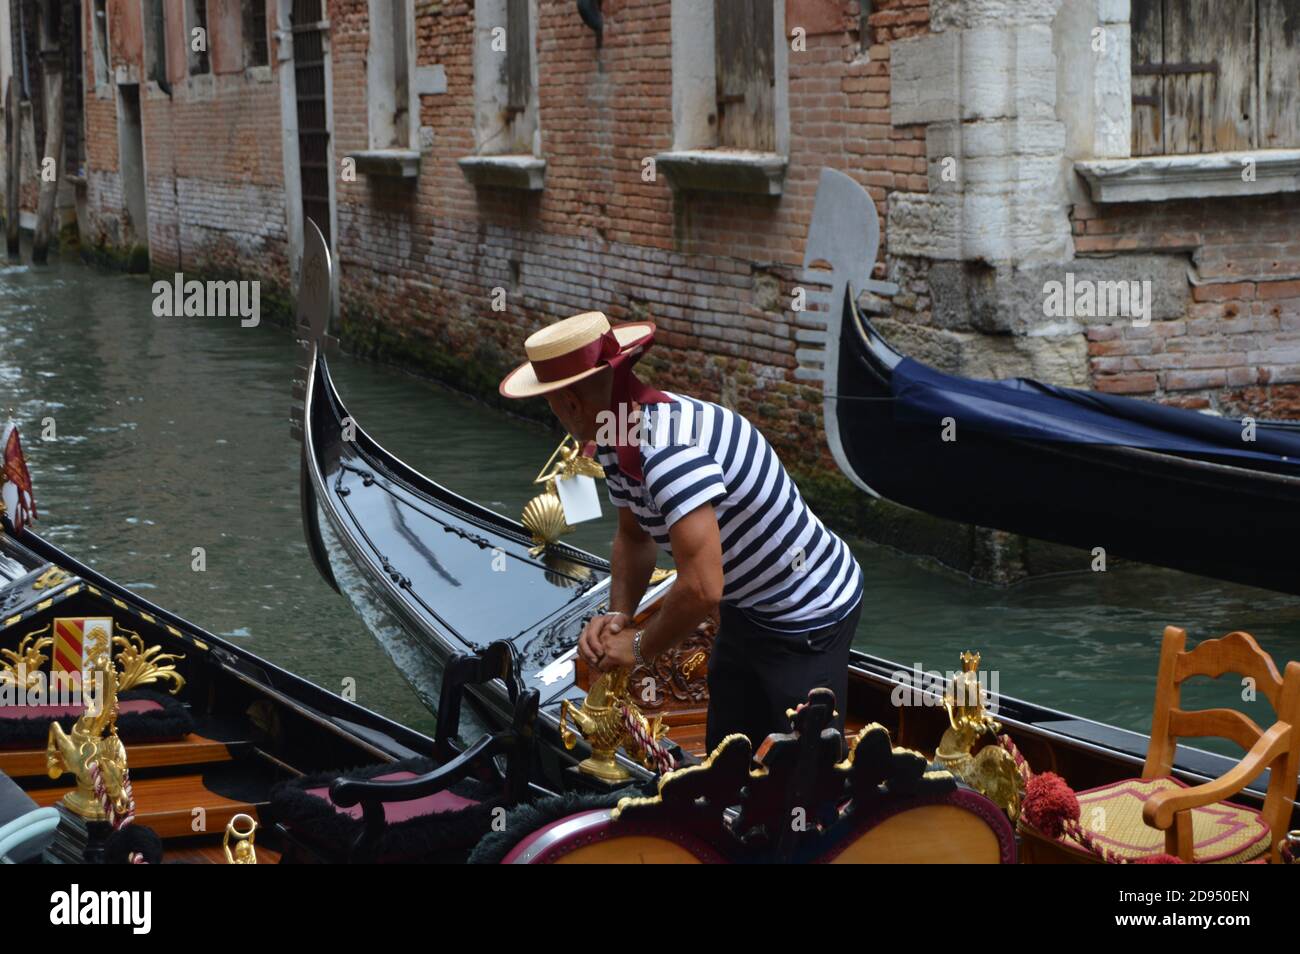 VENECIA, ITALIE - 05 août 2016 : gondole dans les eaux de Venise Italie Banque D'Images